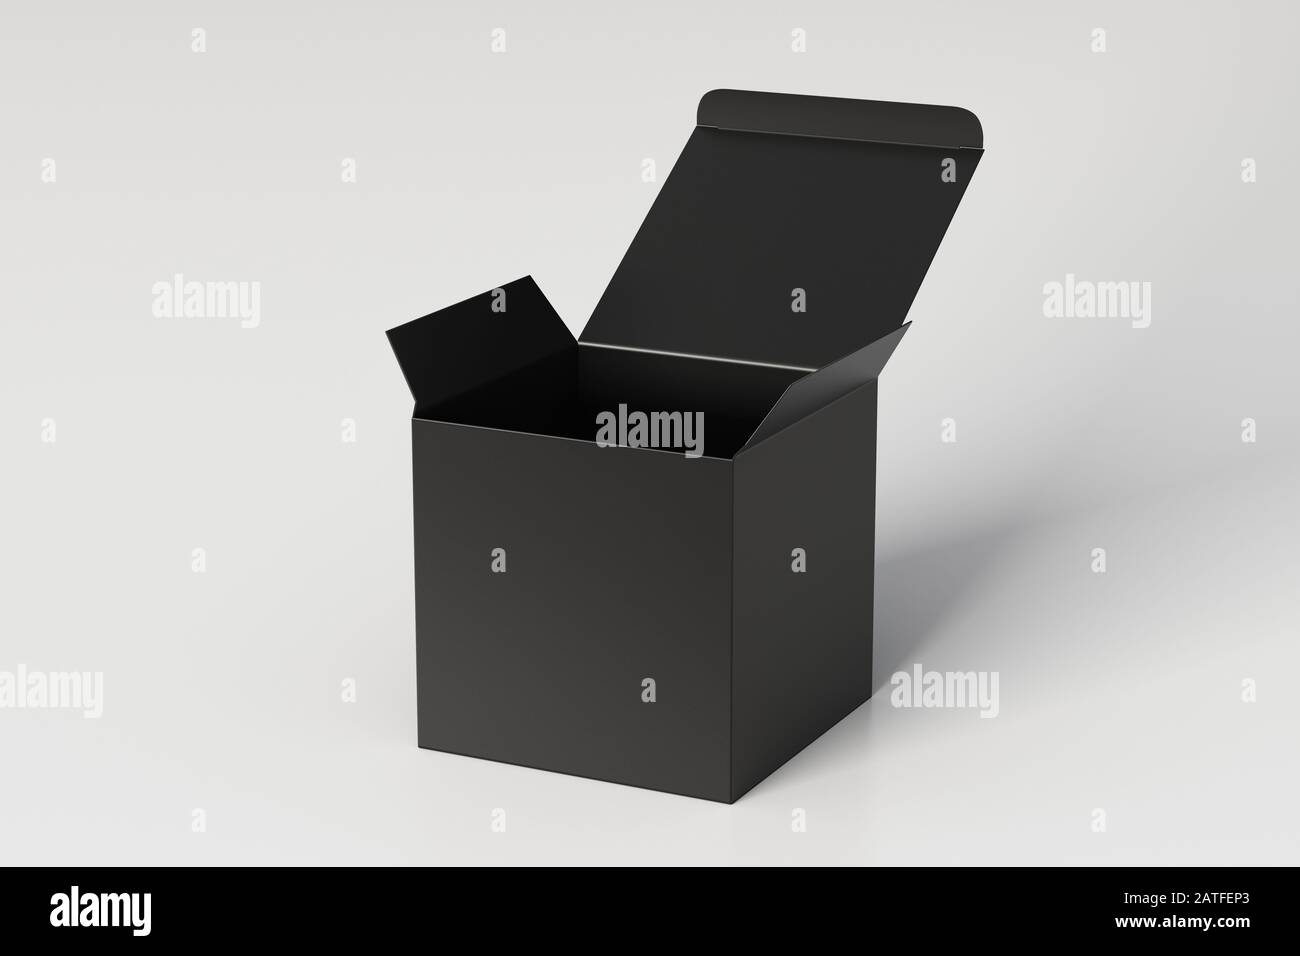 Boîte cadeau cube noire vierge avec couvercle à rabat ouvert sur fond blanc. Chemin de détourage autour de la maquette de boîte Banque D'Images